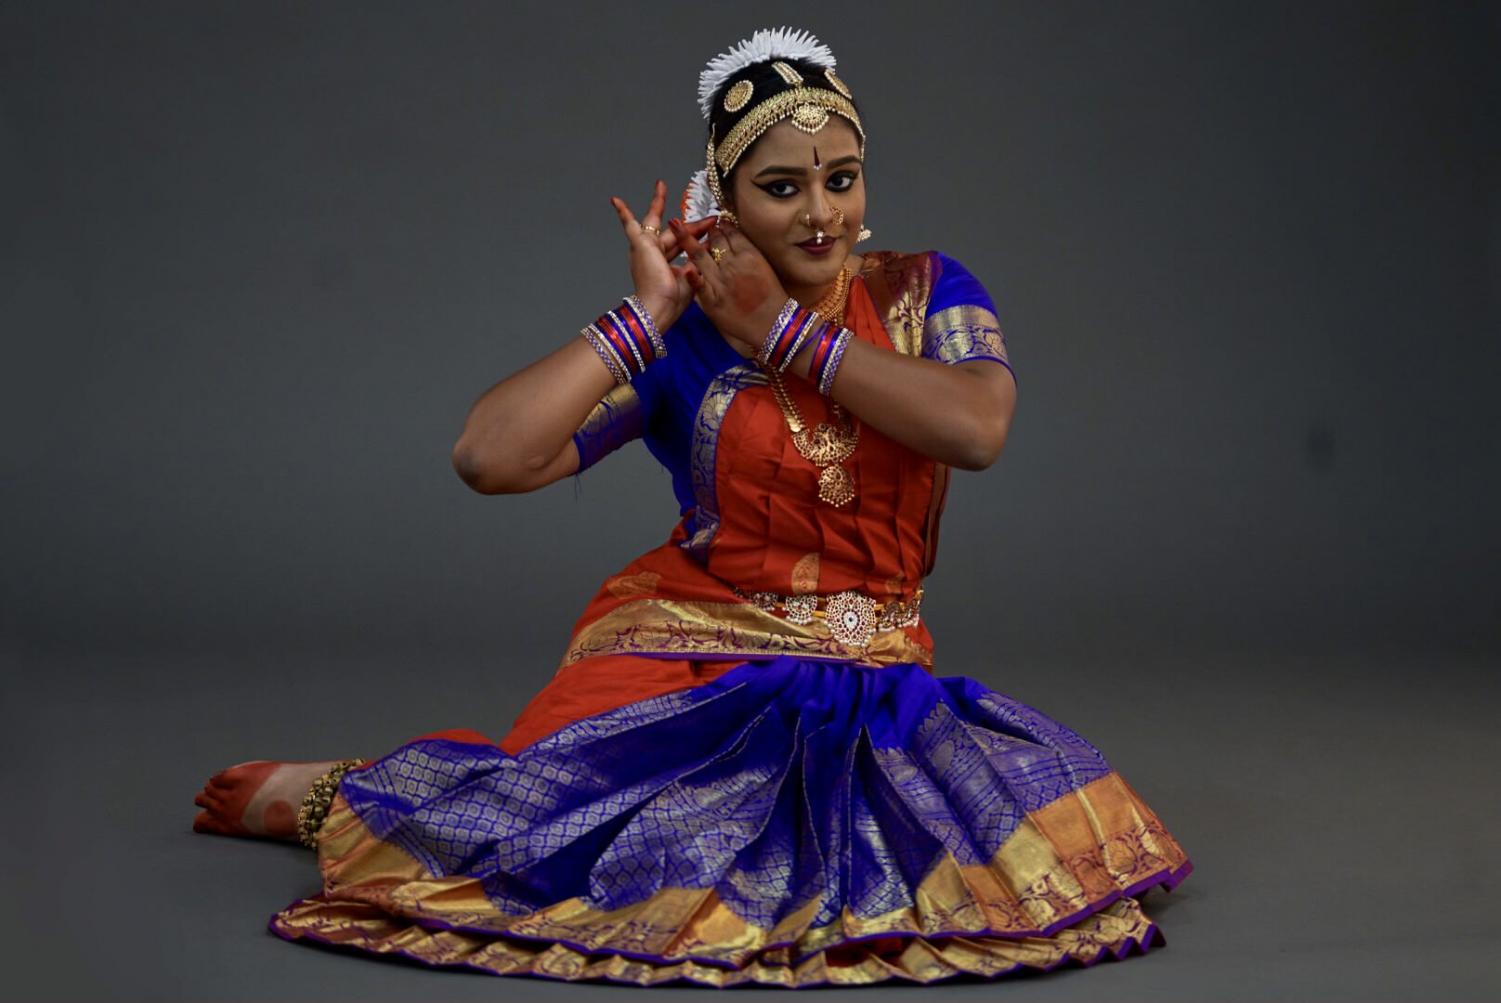 Dancing | Bharatanatyam dancer, Bharatanatyam poses, Bharatanatyam costume